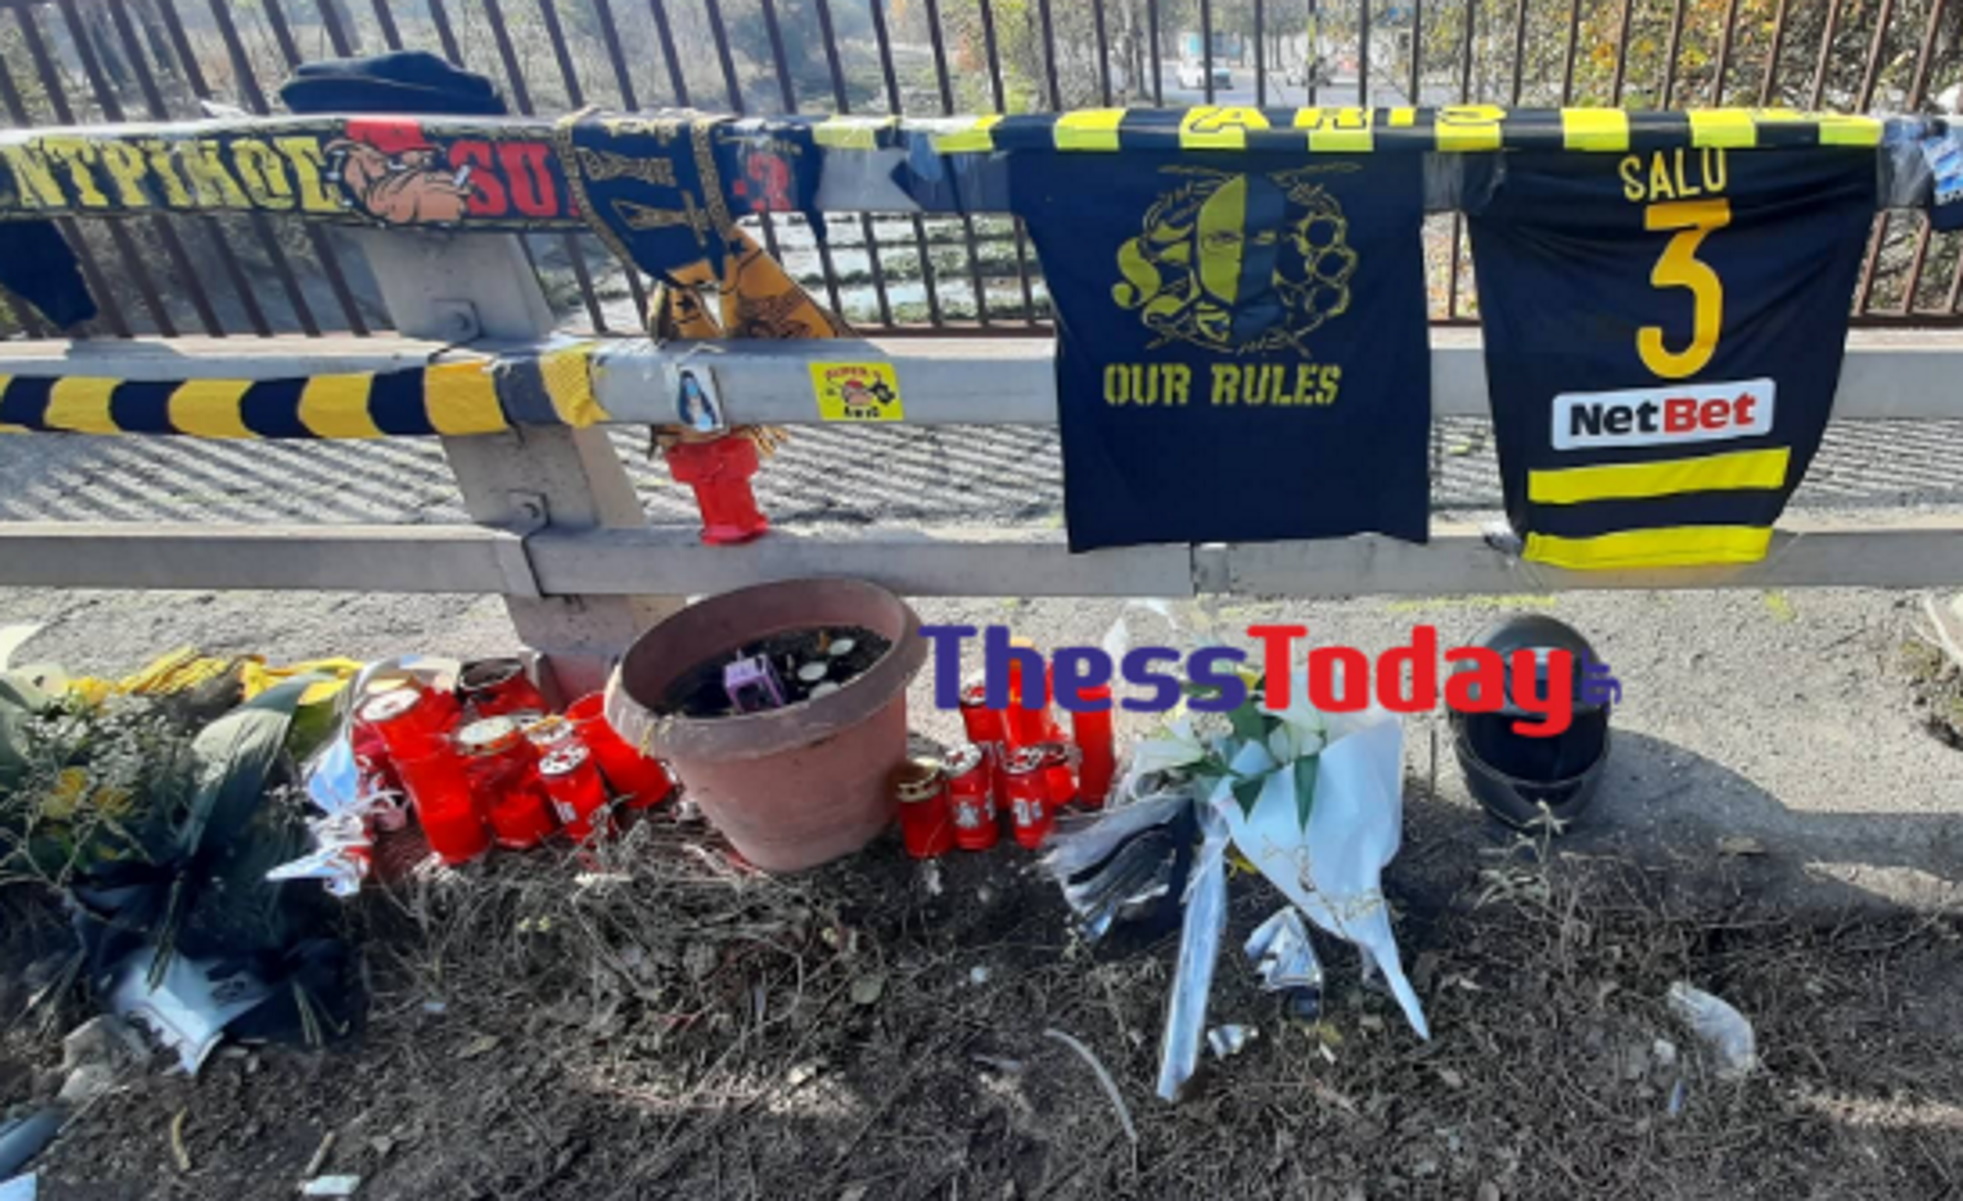 Καλαμαριά: Φανέλες του Άρη και λουλούδια στο σημείο που σκοτώθηκε ο 19χρονος σε τροχαίο